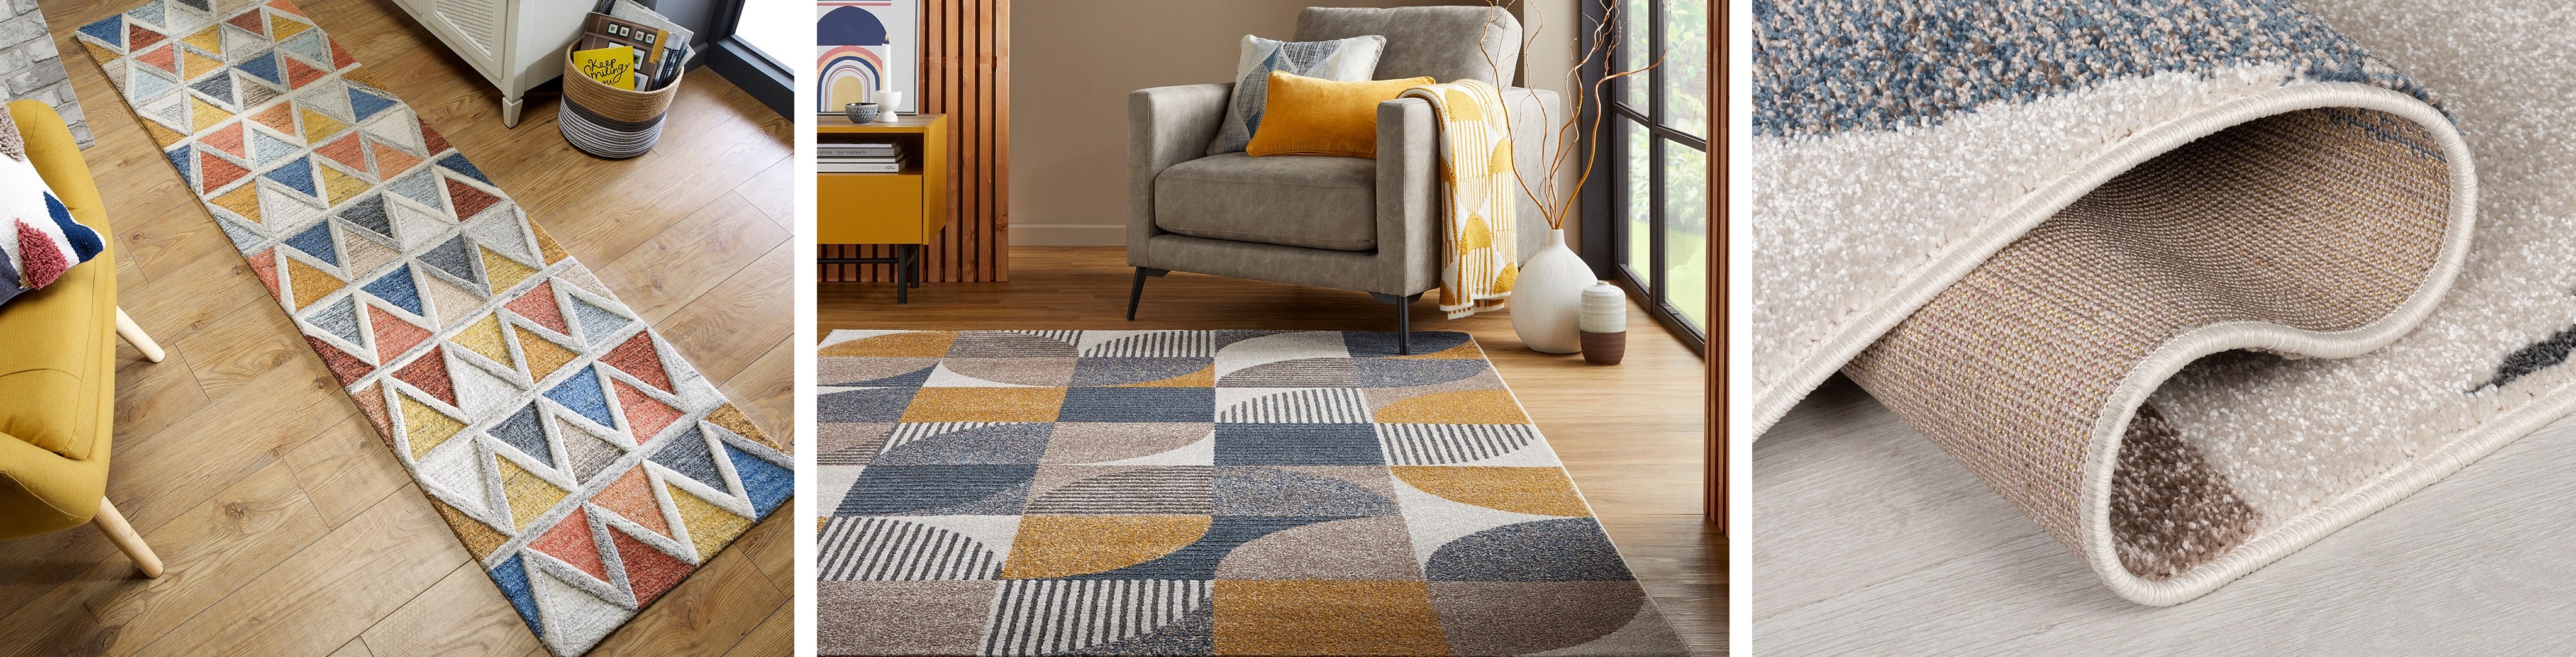 Bunte Teppiche: ein Teppichlaufer und ein großer Teppich